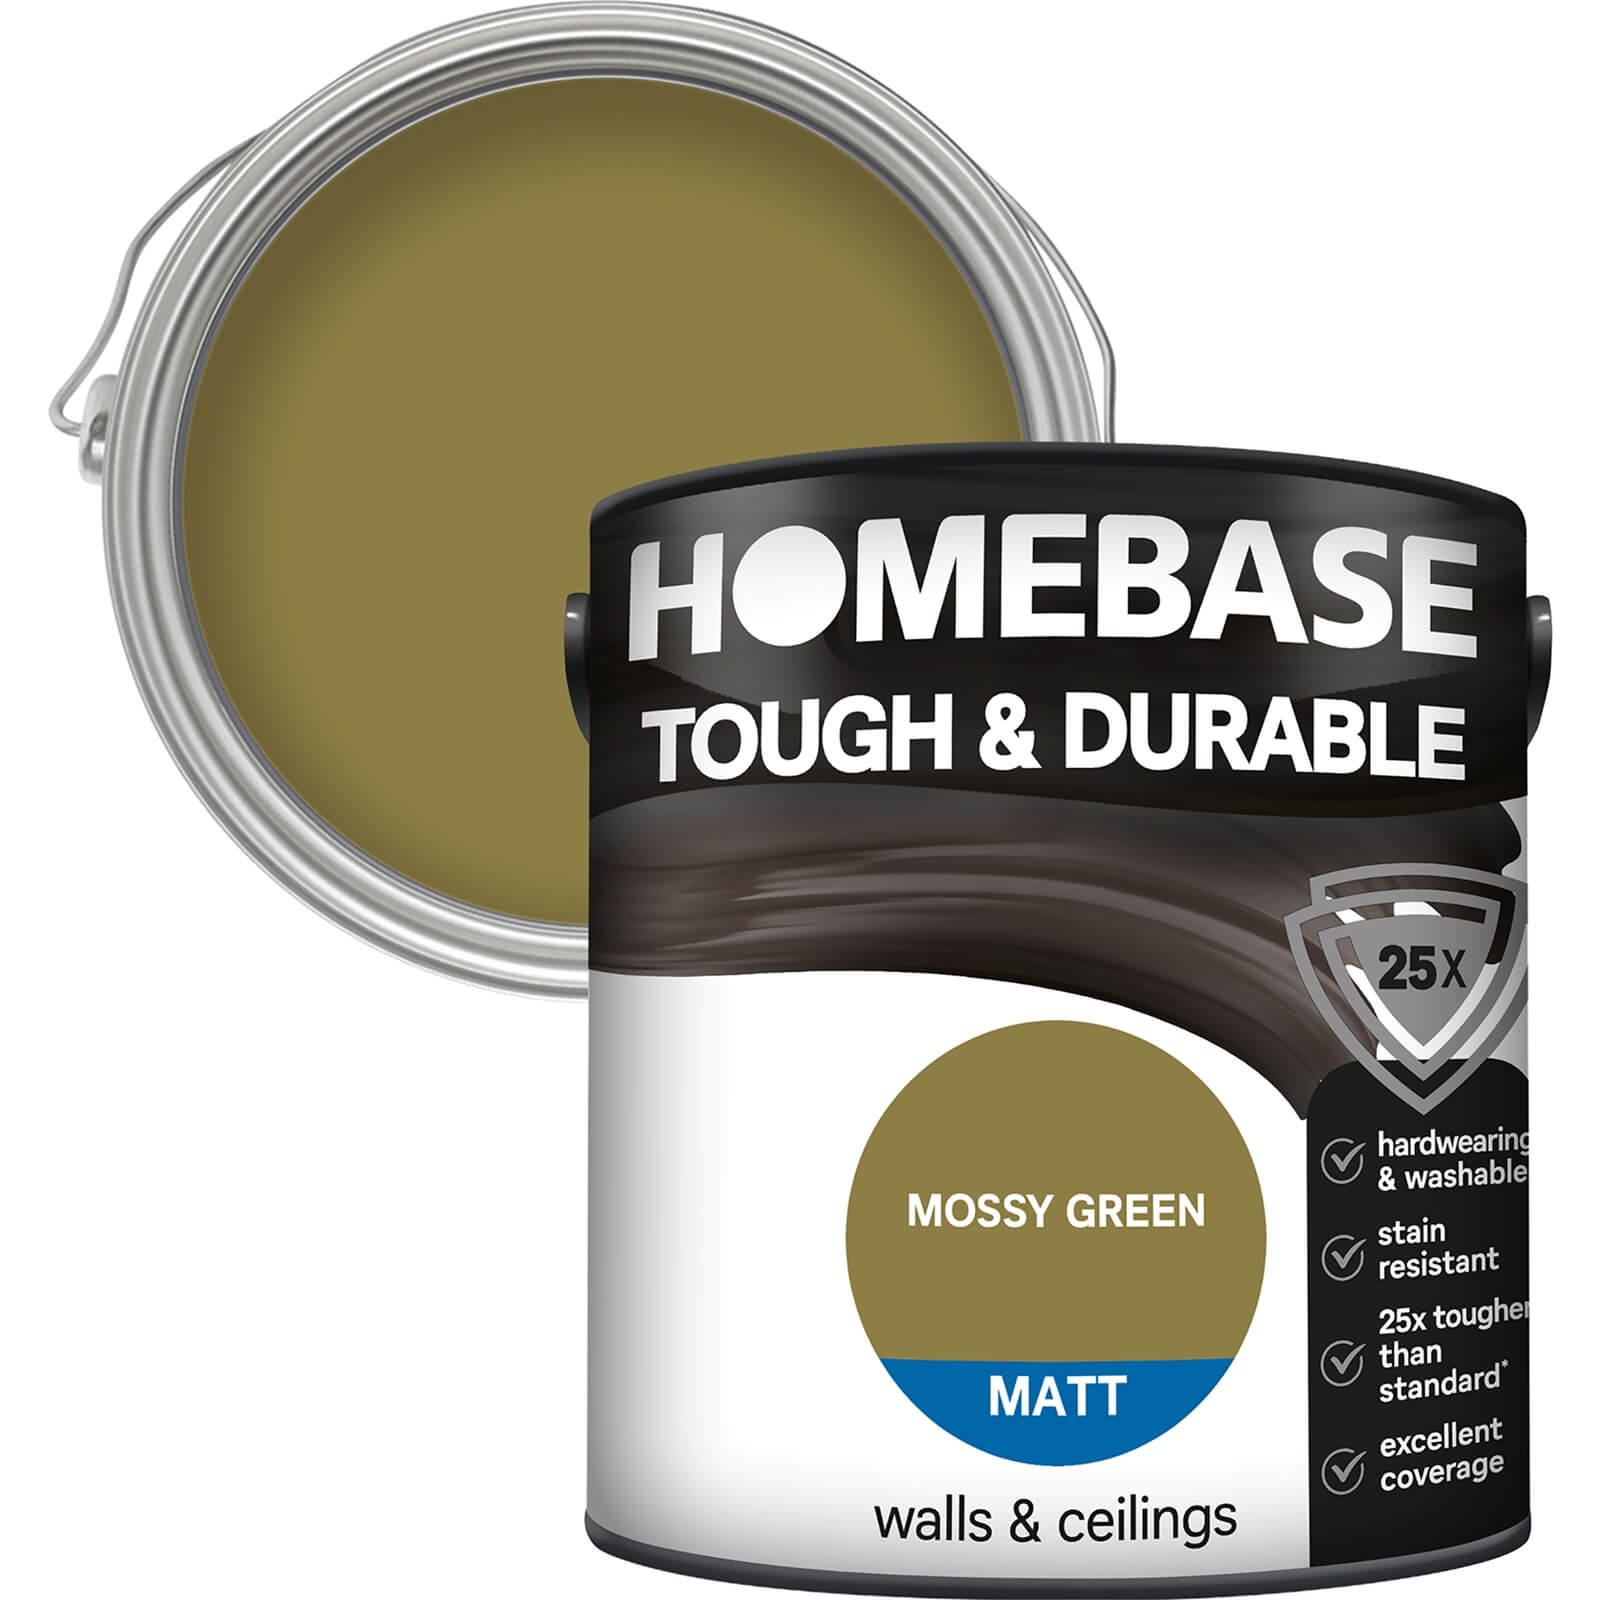 Homebase Tough & Durable Matt Paint Moss Green - 2.5L